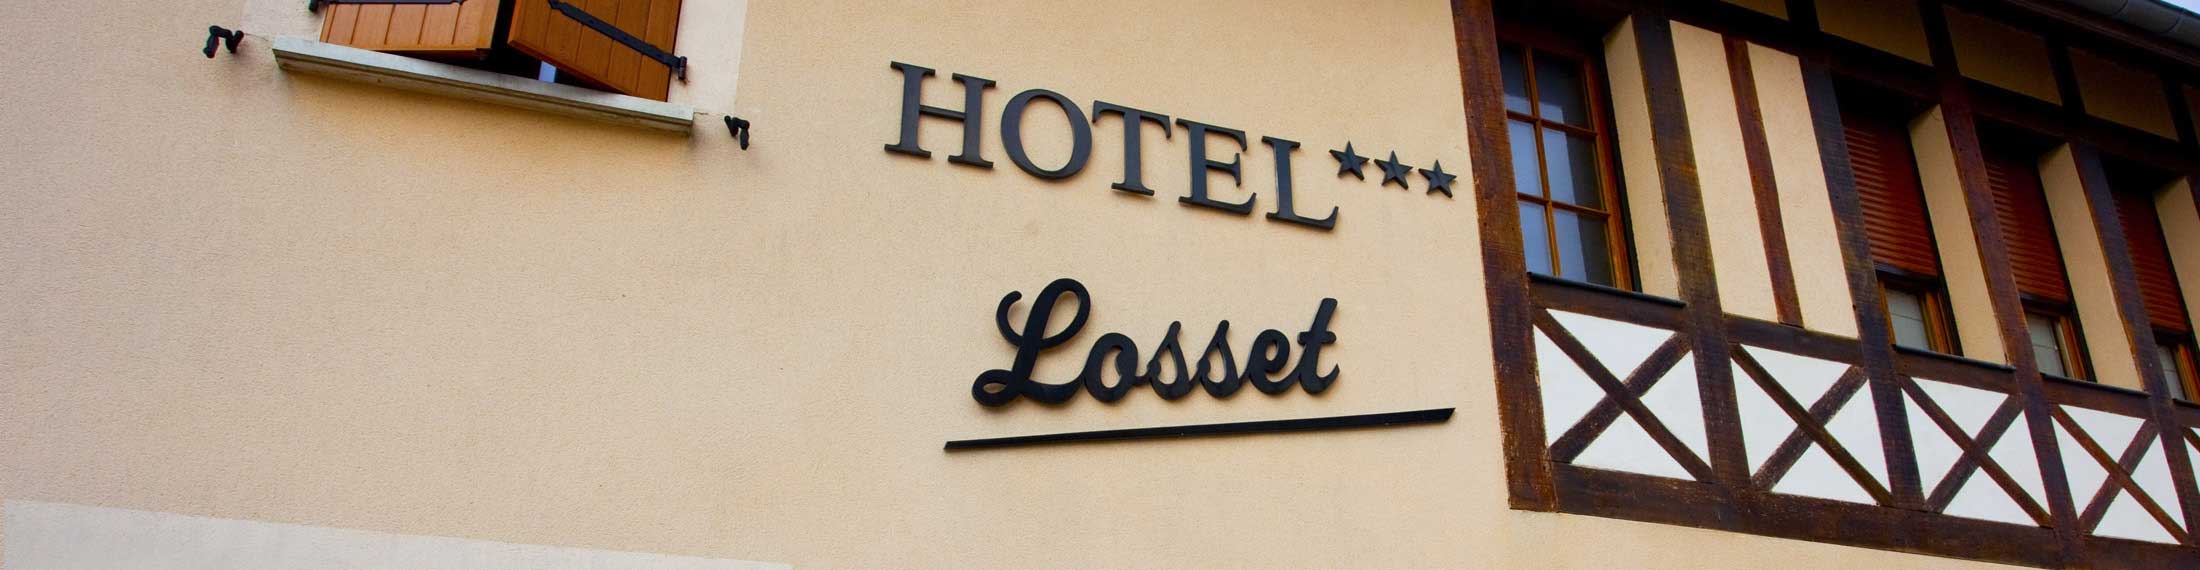 Hôtel Losset 3 étoiles à FLAGEY ECHEZEAUX en Bourgogne